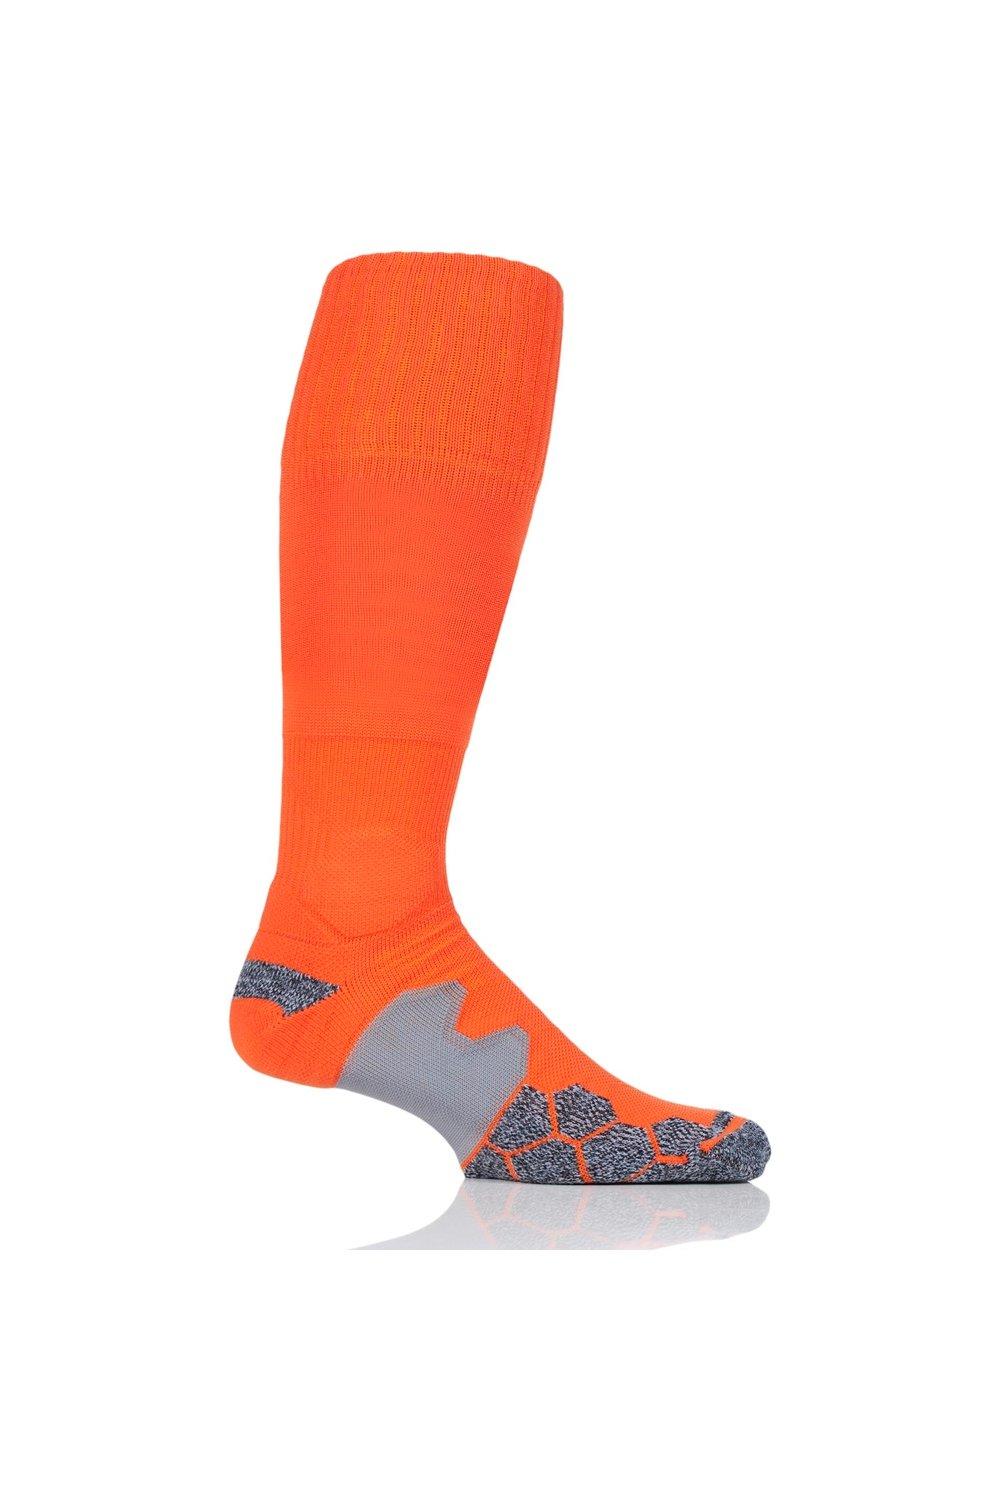 1 пара технических футбольных носков с мягкой подкладкой, произведенных в Великобритании SOCKSHOP of London, оранжевый